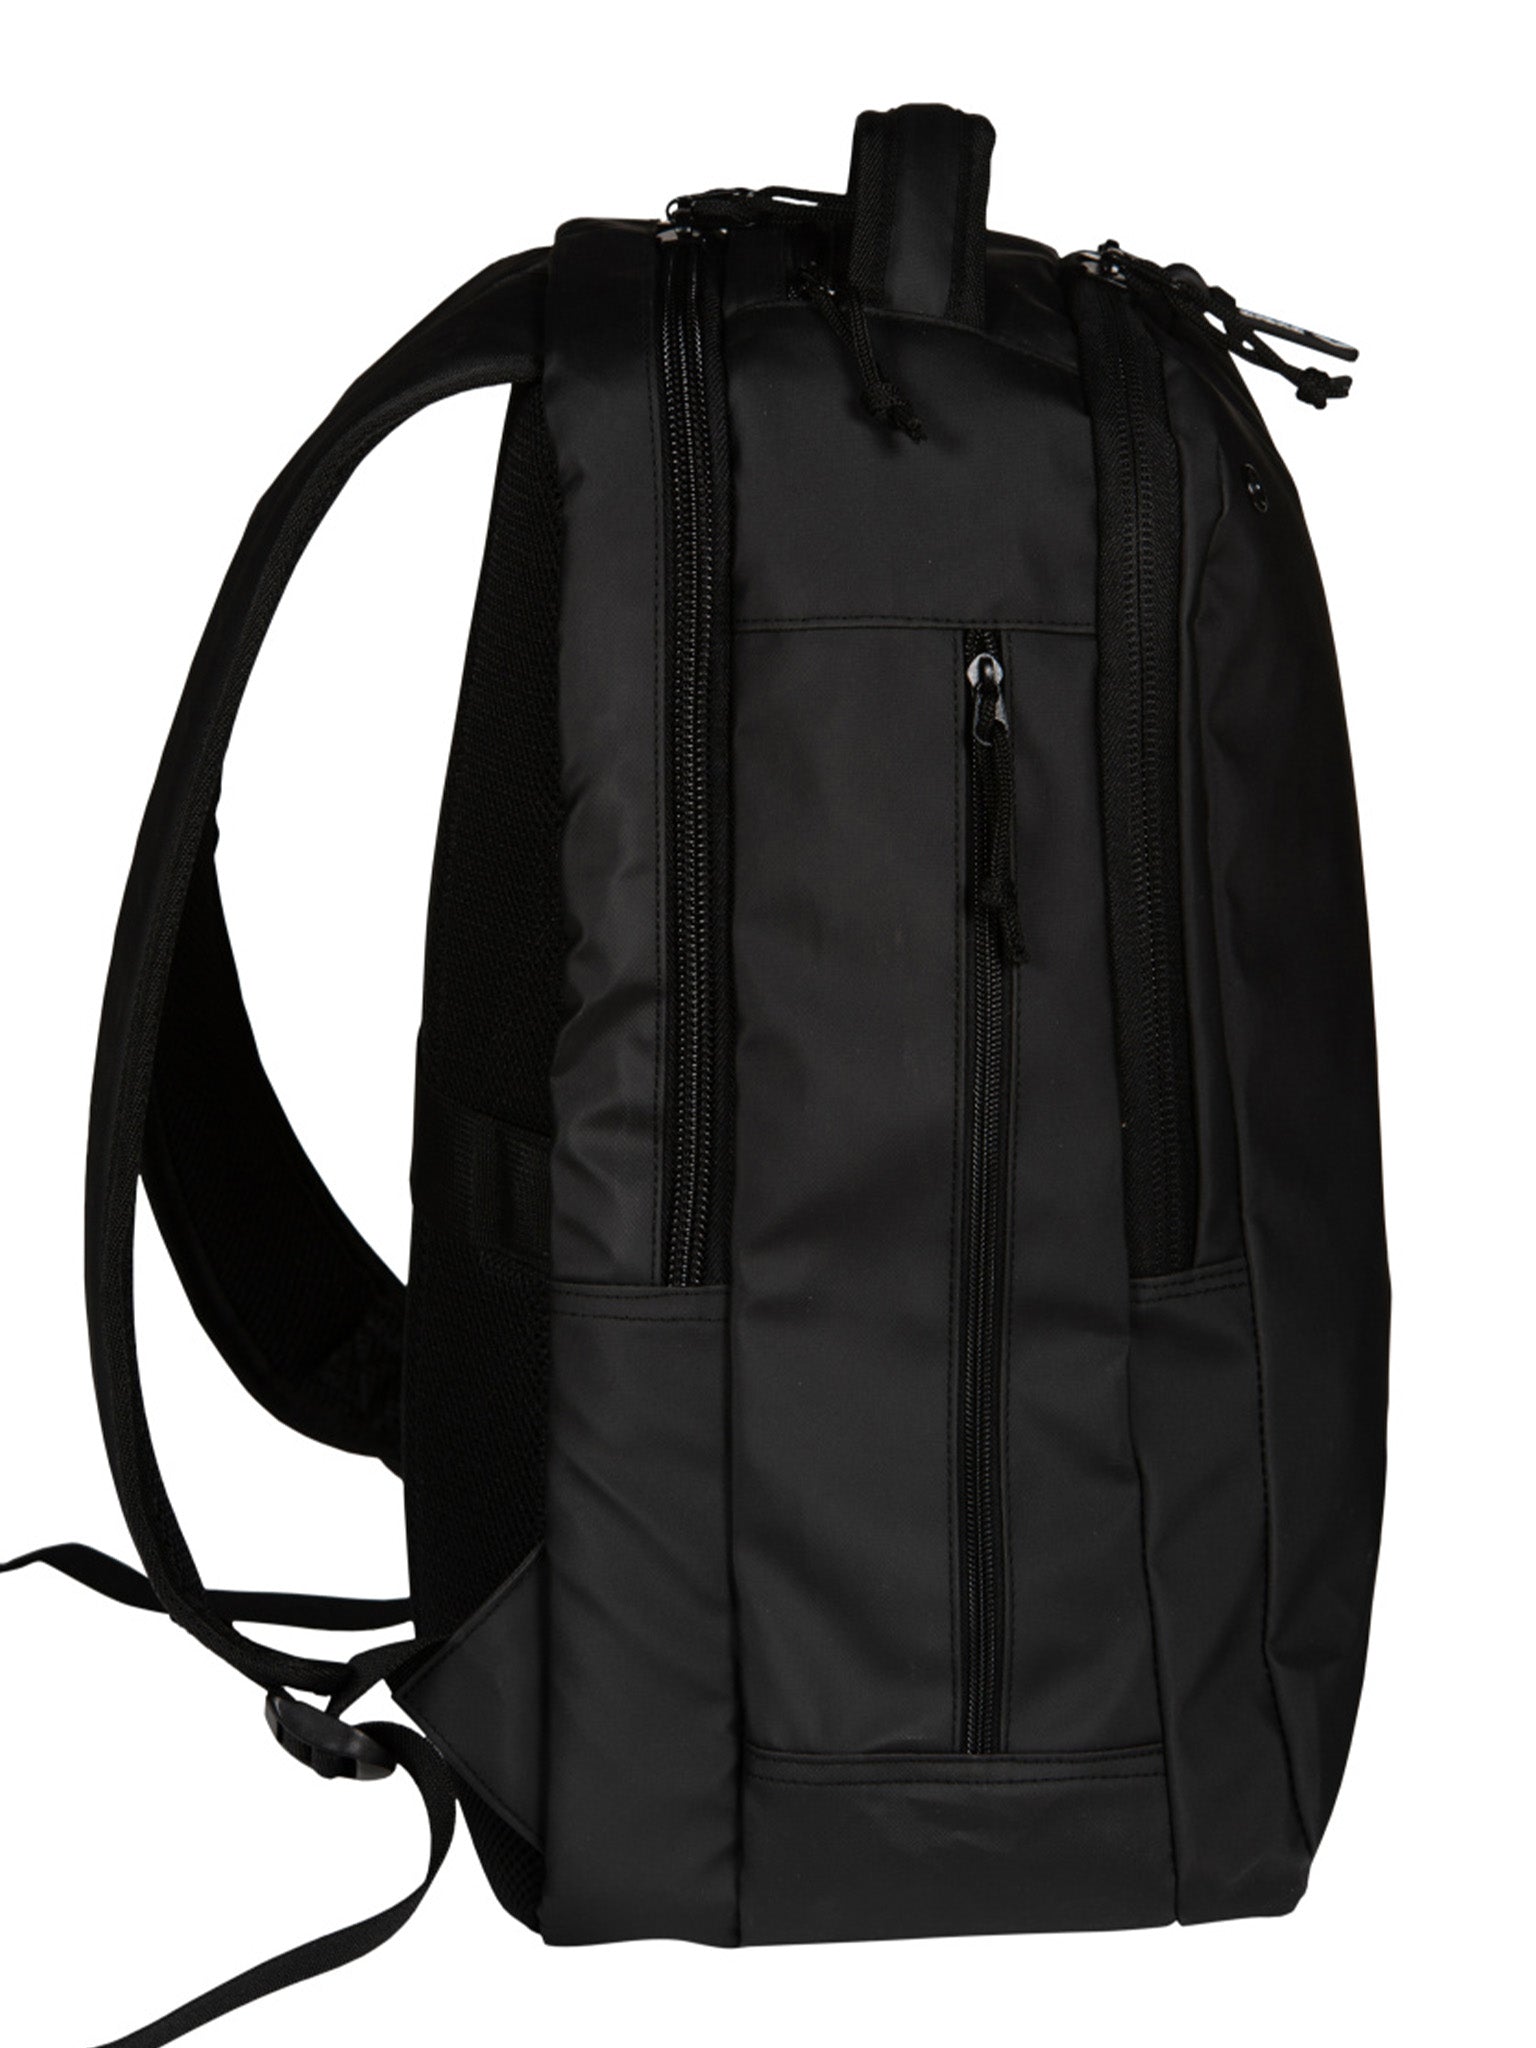 Fast Urban Backpack 3.0